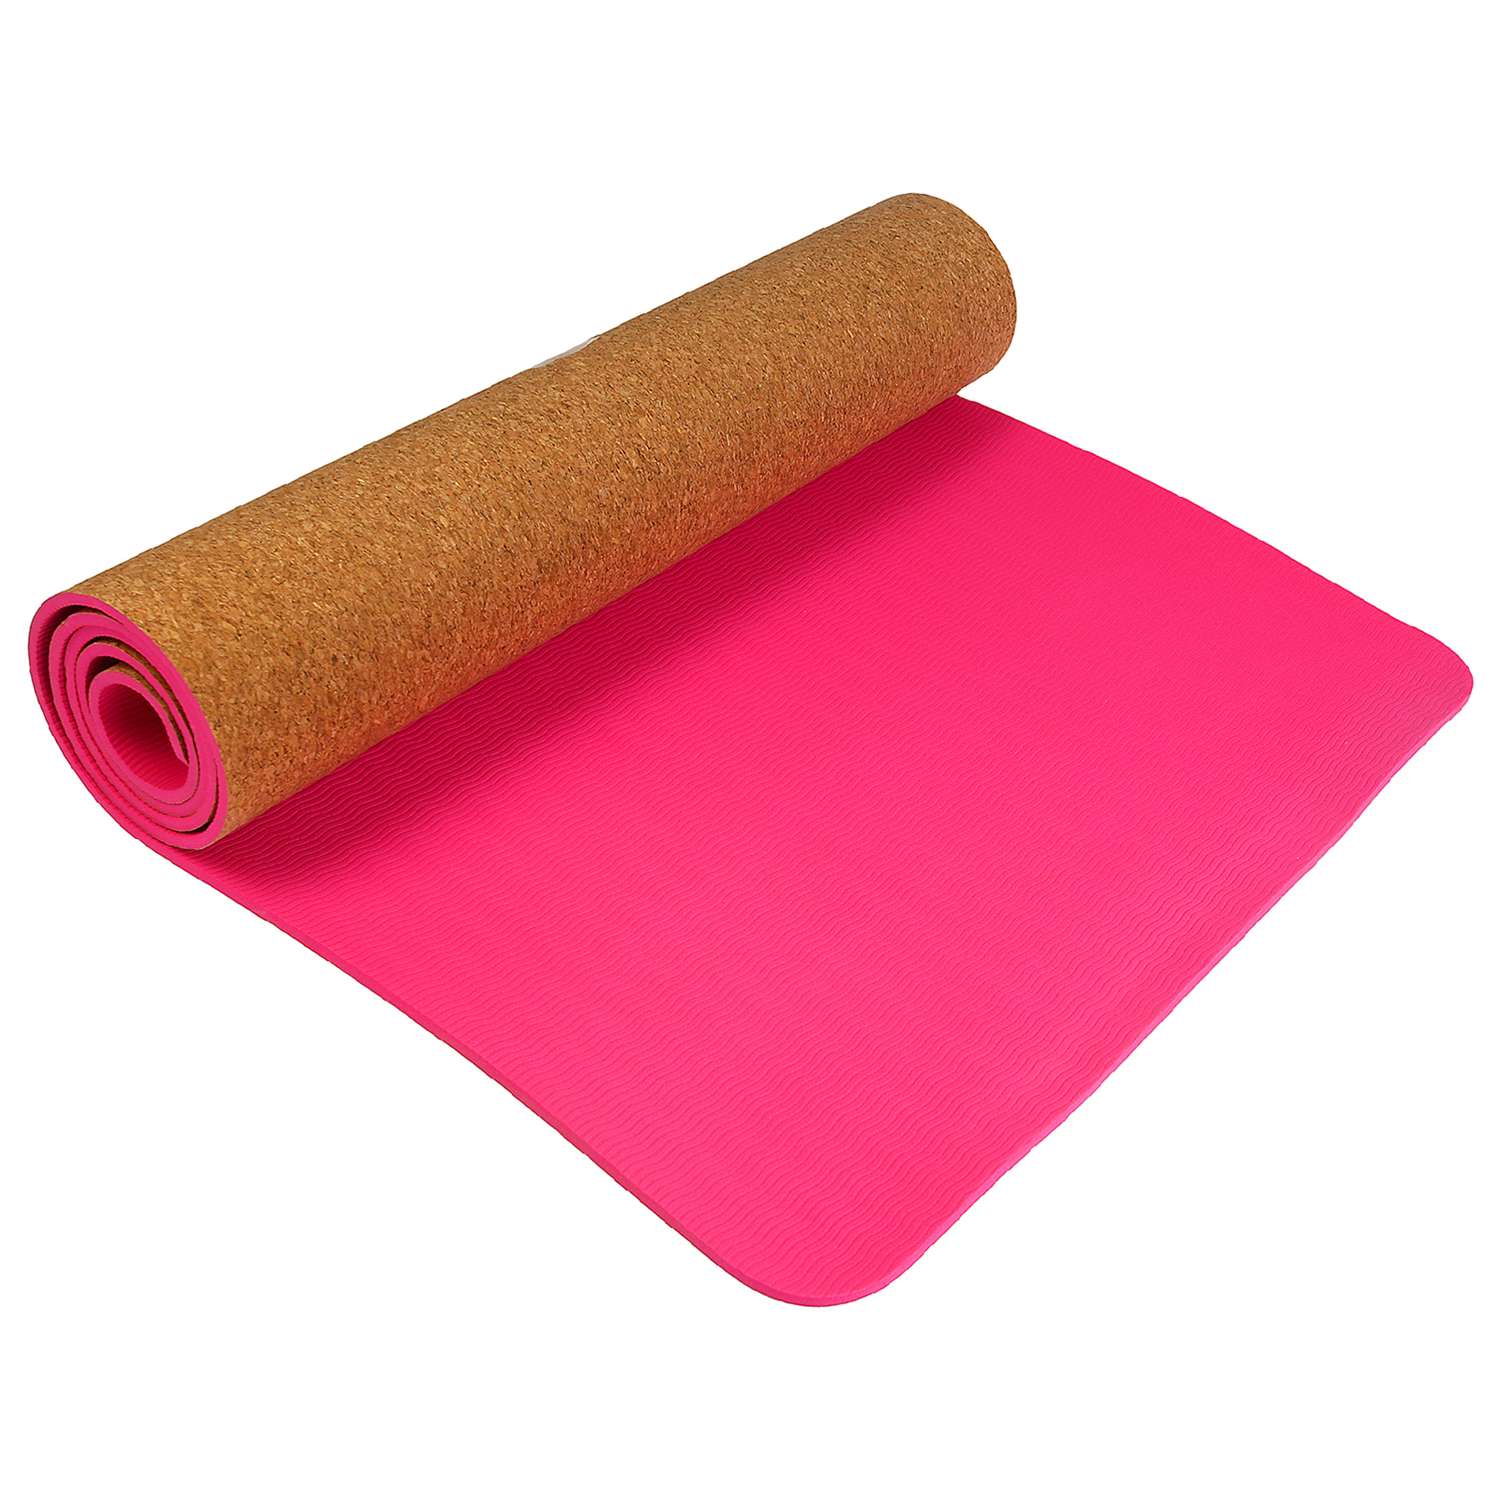 Коврик Sangh Для йоги двухцветный розовый пробка - фото 1